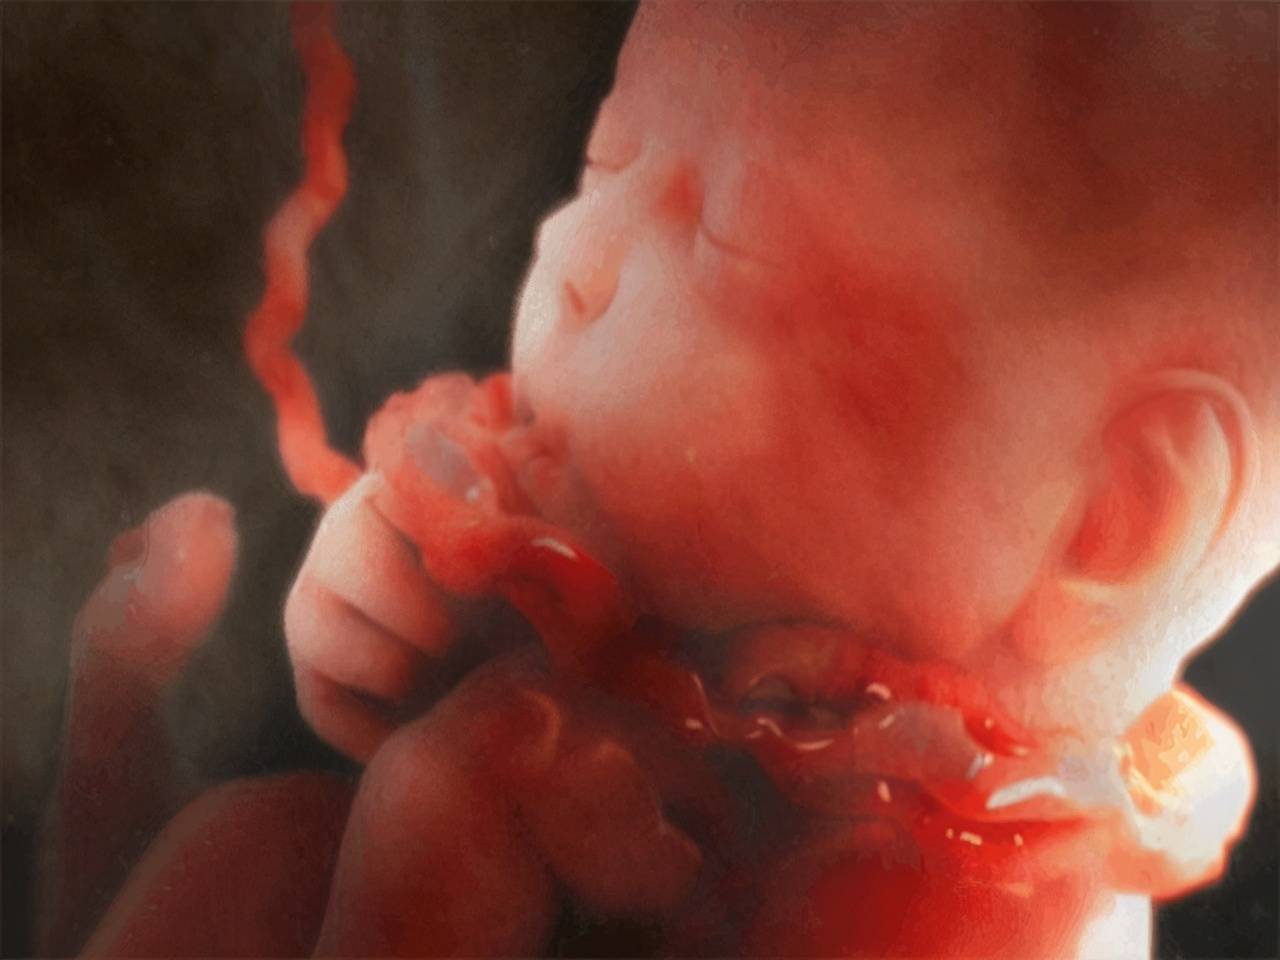 与胎儿睡觉的姿势有关 孕妇肚子的形状与胎儿在肚子里的姿势有关,胎儿